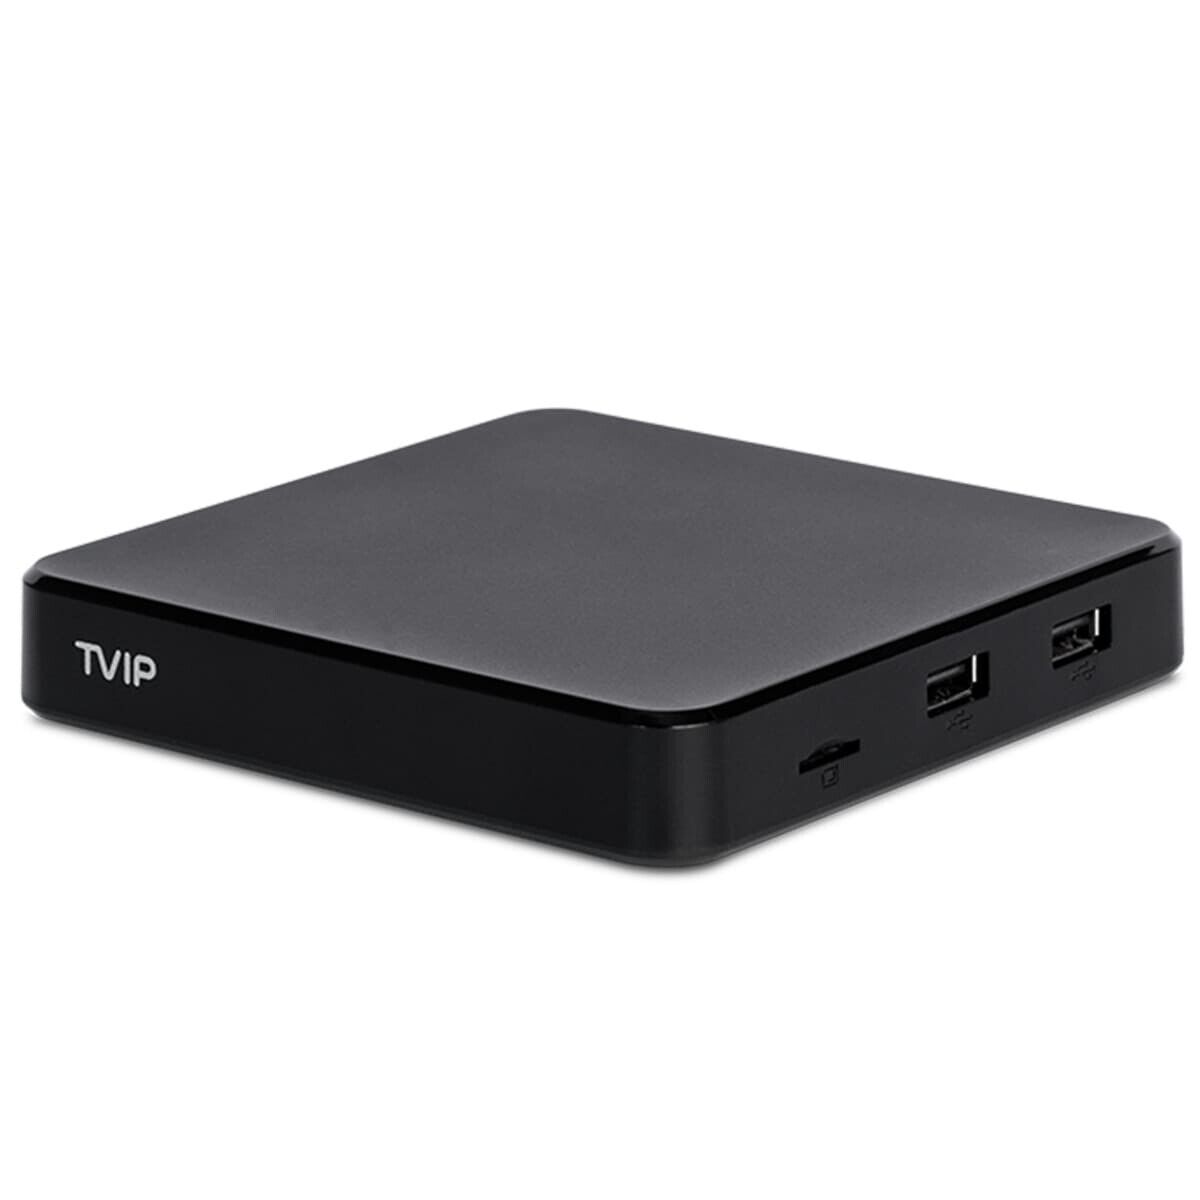 TVIP S-Box v.605 SE 4K UHD Linux IP-Receiver (Dual-WiFi, LAN, Bluetooth, HDMI, USB, MicroSD)